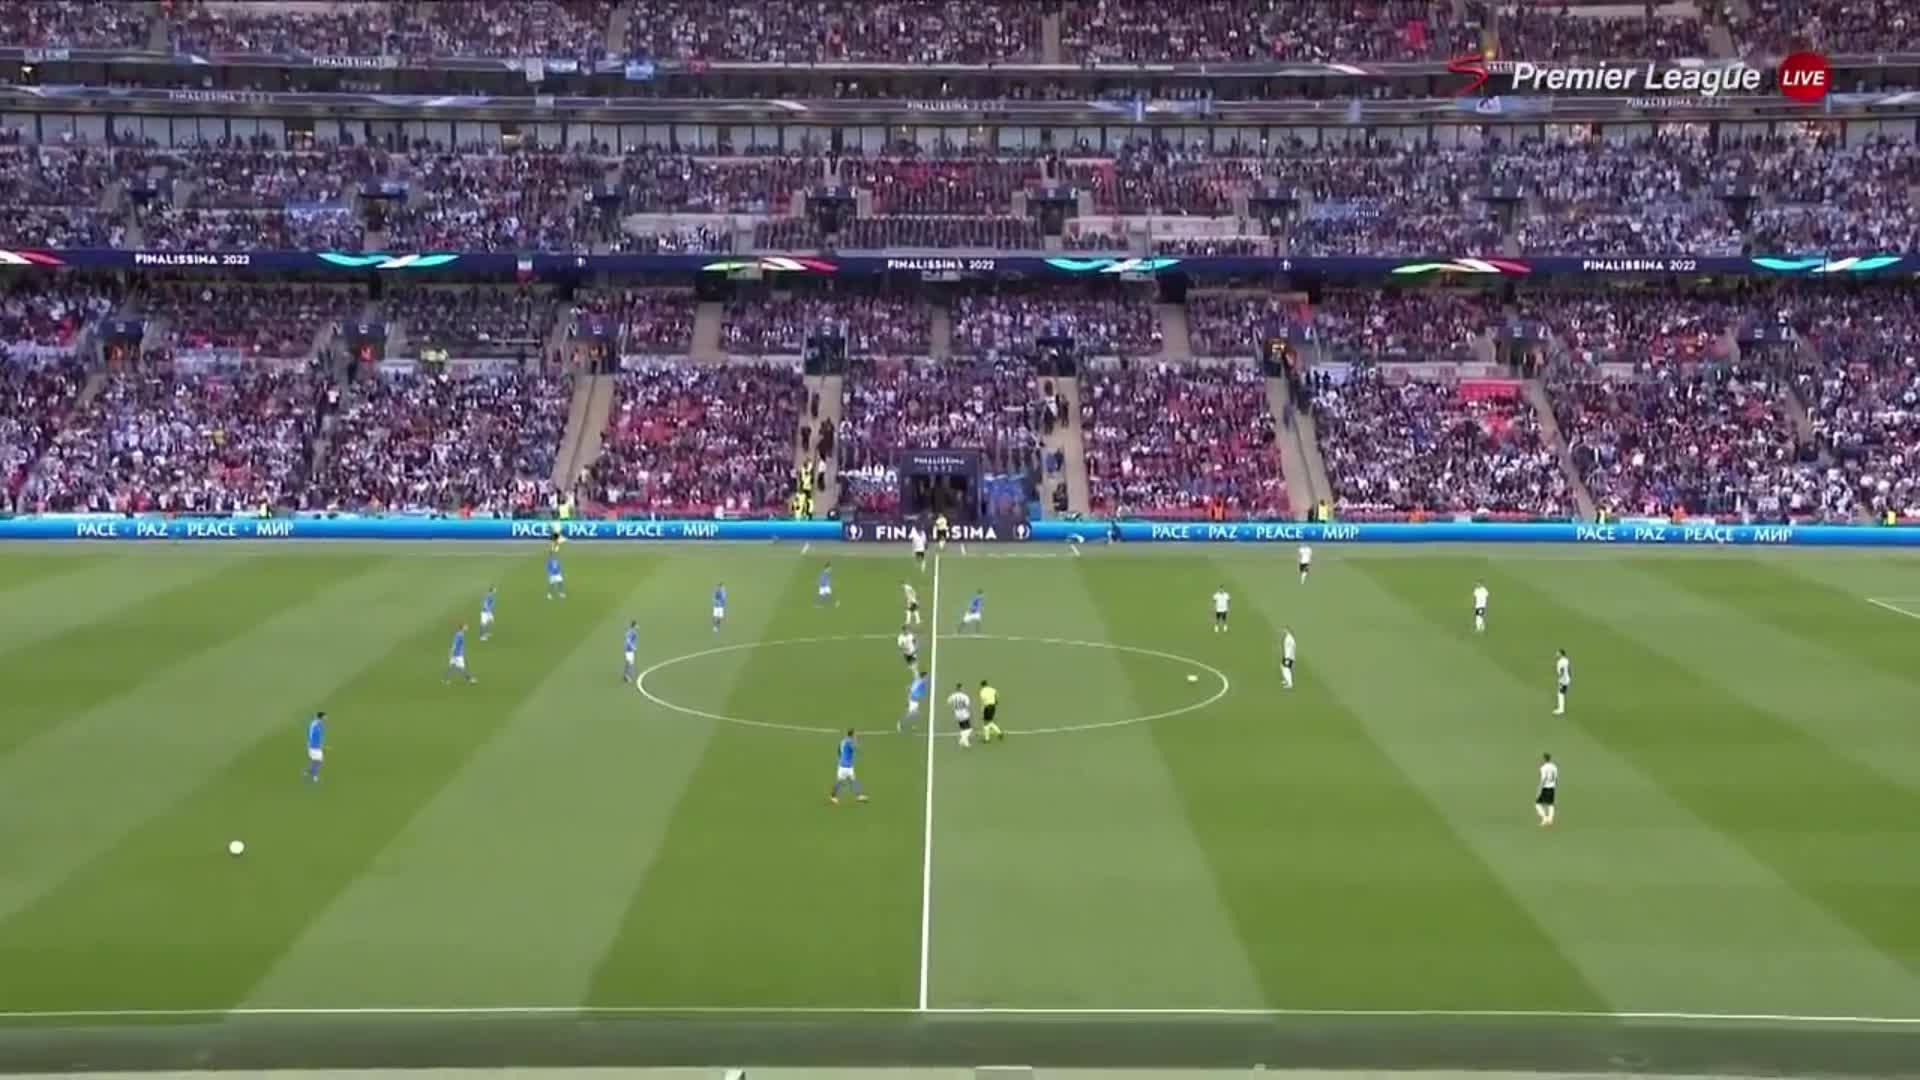 【集锦】欧美杯-梅西两助攻天使破门 阿根廷3-0胜意大利夺冠